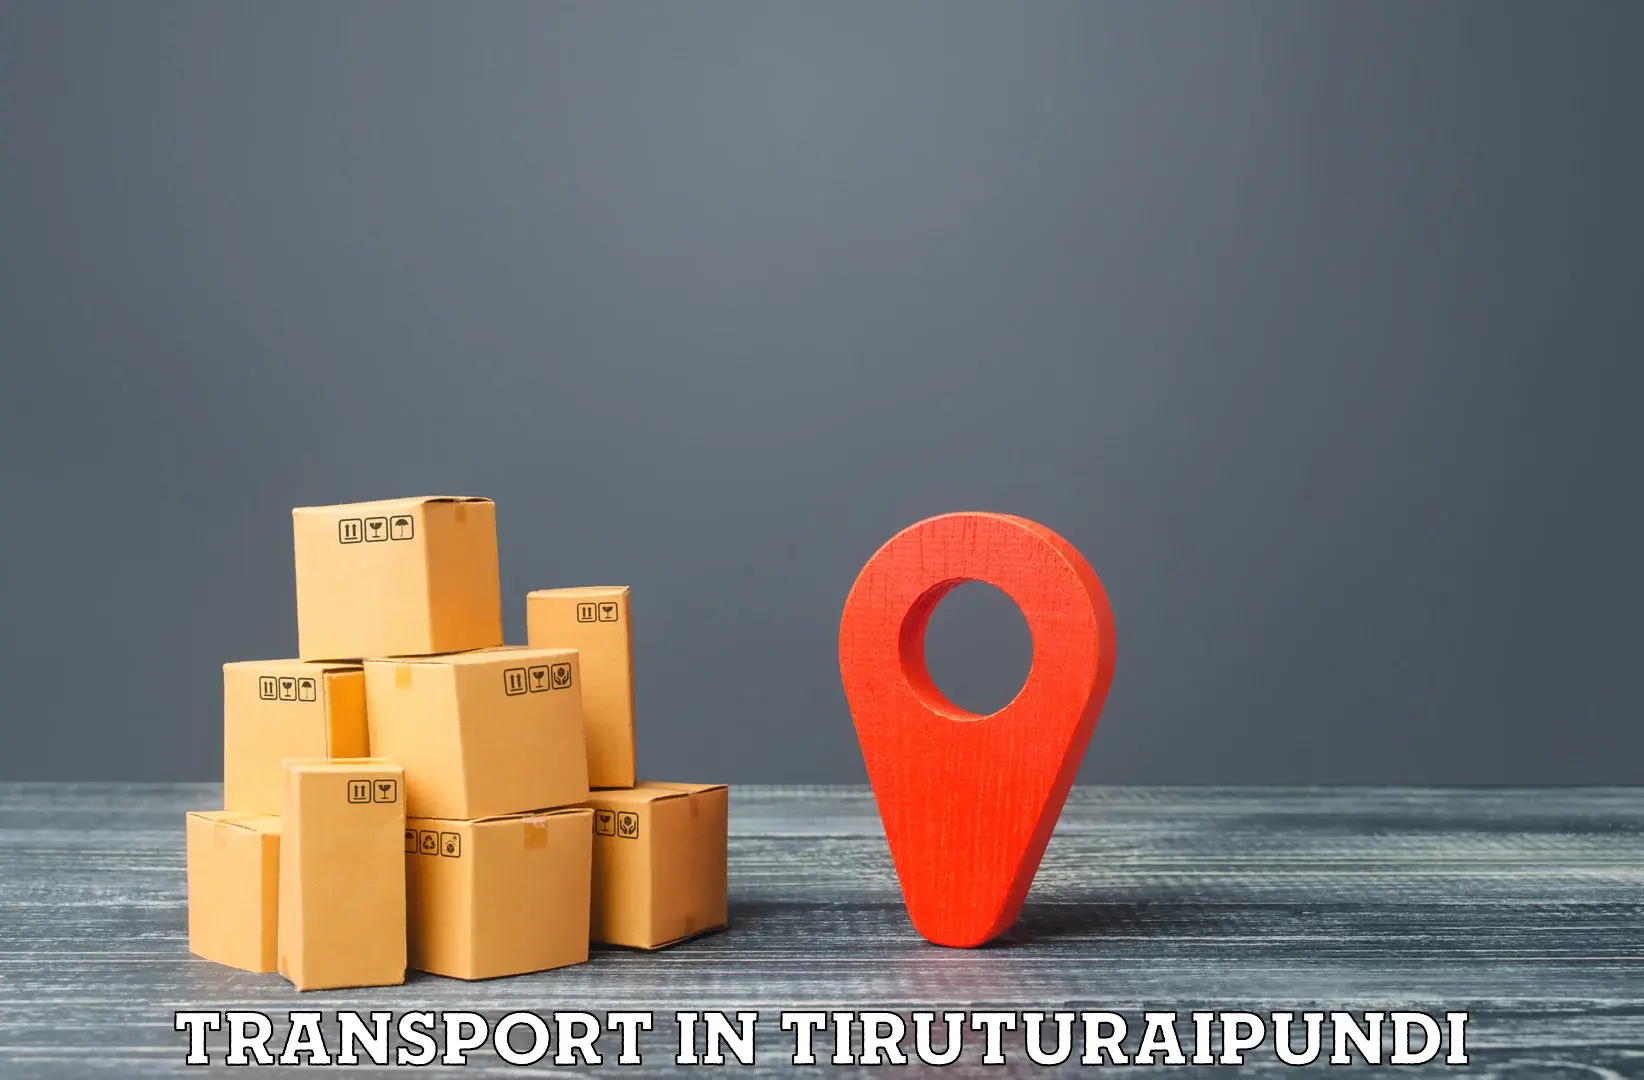 Land transport services in Tiruturaipundi